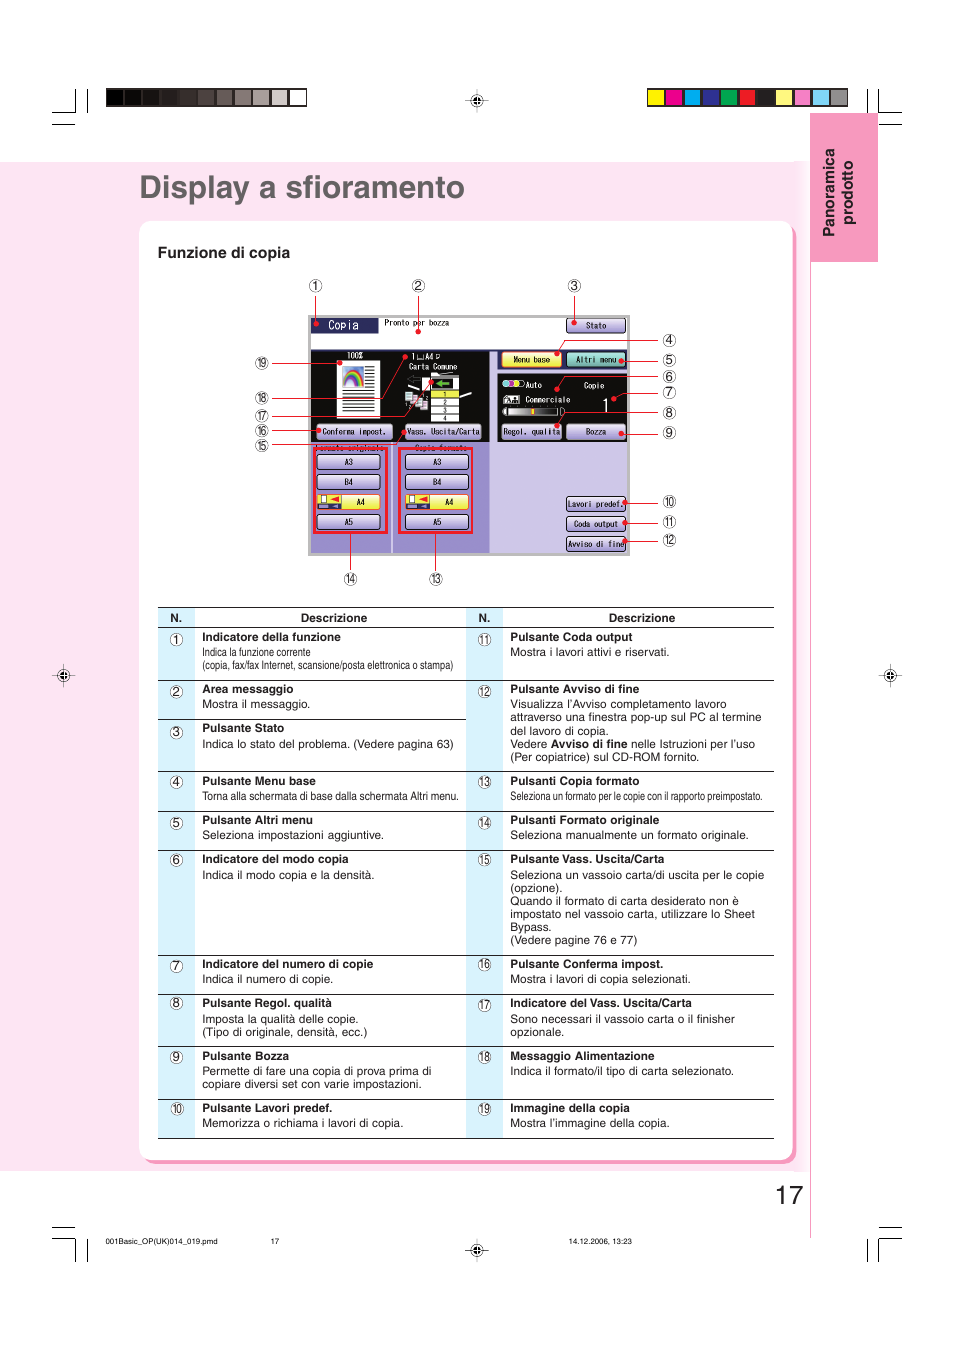 Display a sfioramento, Funzione di copia, Edere pagine 17-19) | Panasonic DPC213 Manuale d'uso | Pagina 17 / 112